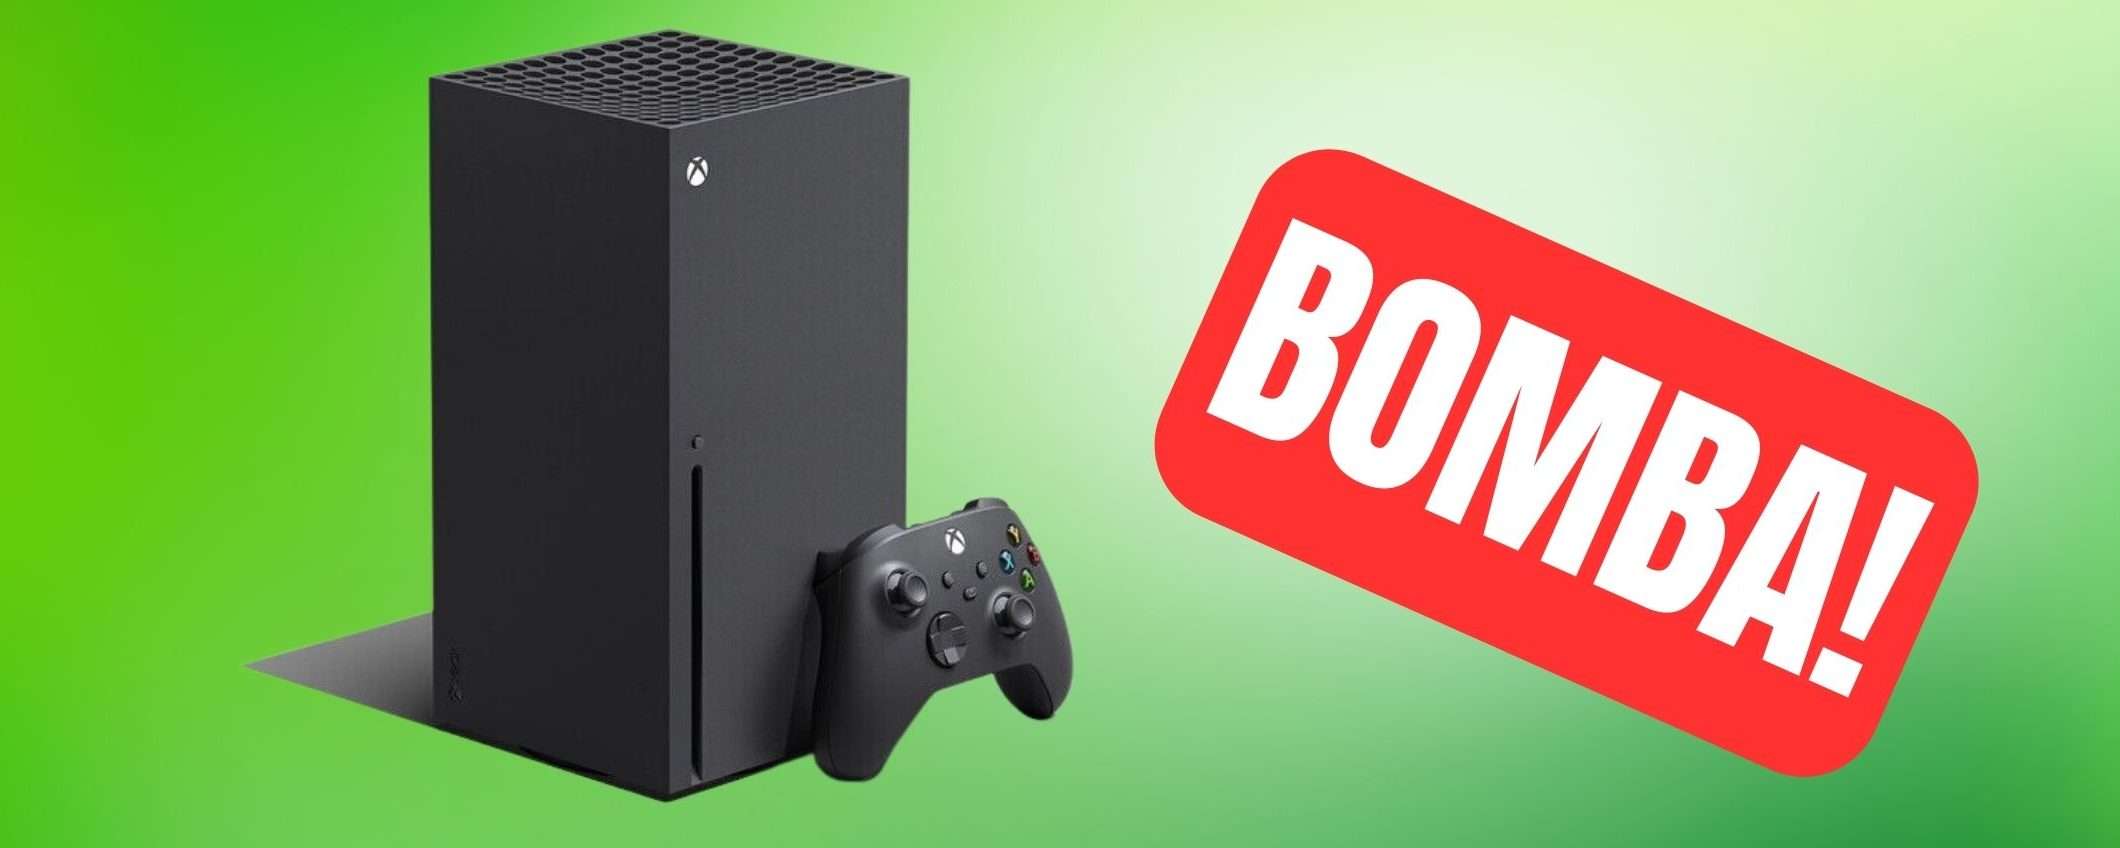 Xbox Series X: offerta BOMBA su eBay, è il prezzo più basso di sempre